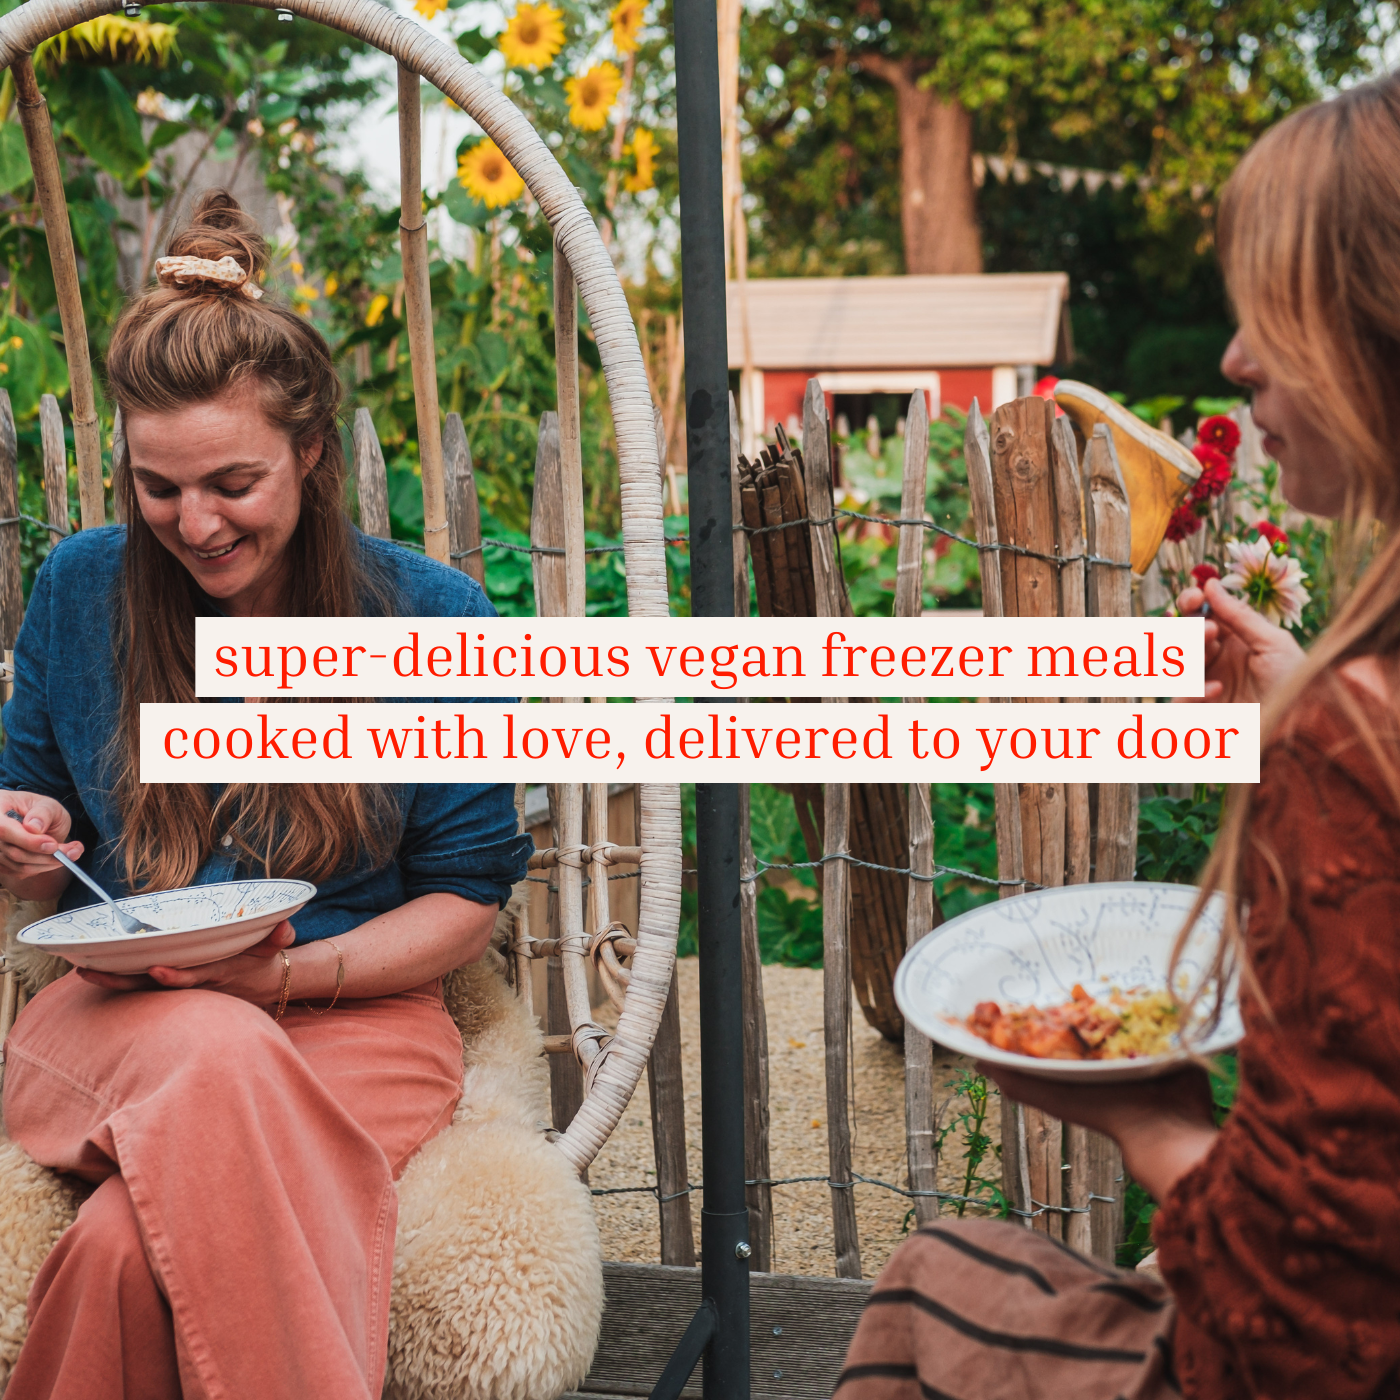 Vegan freezer meals home delivered by Solid Stash